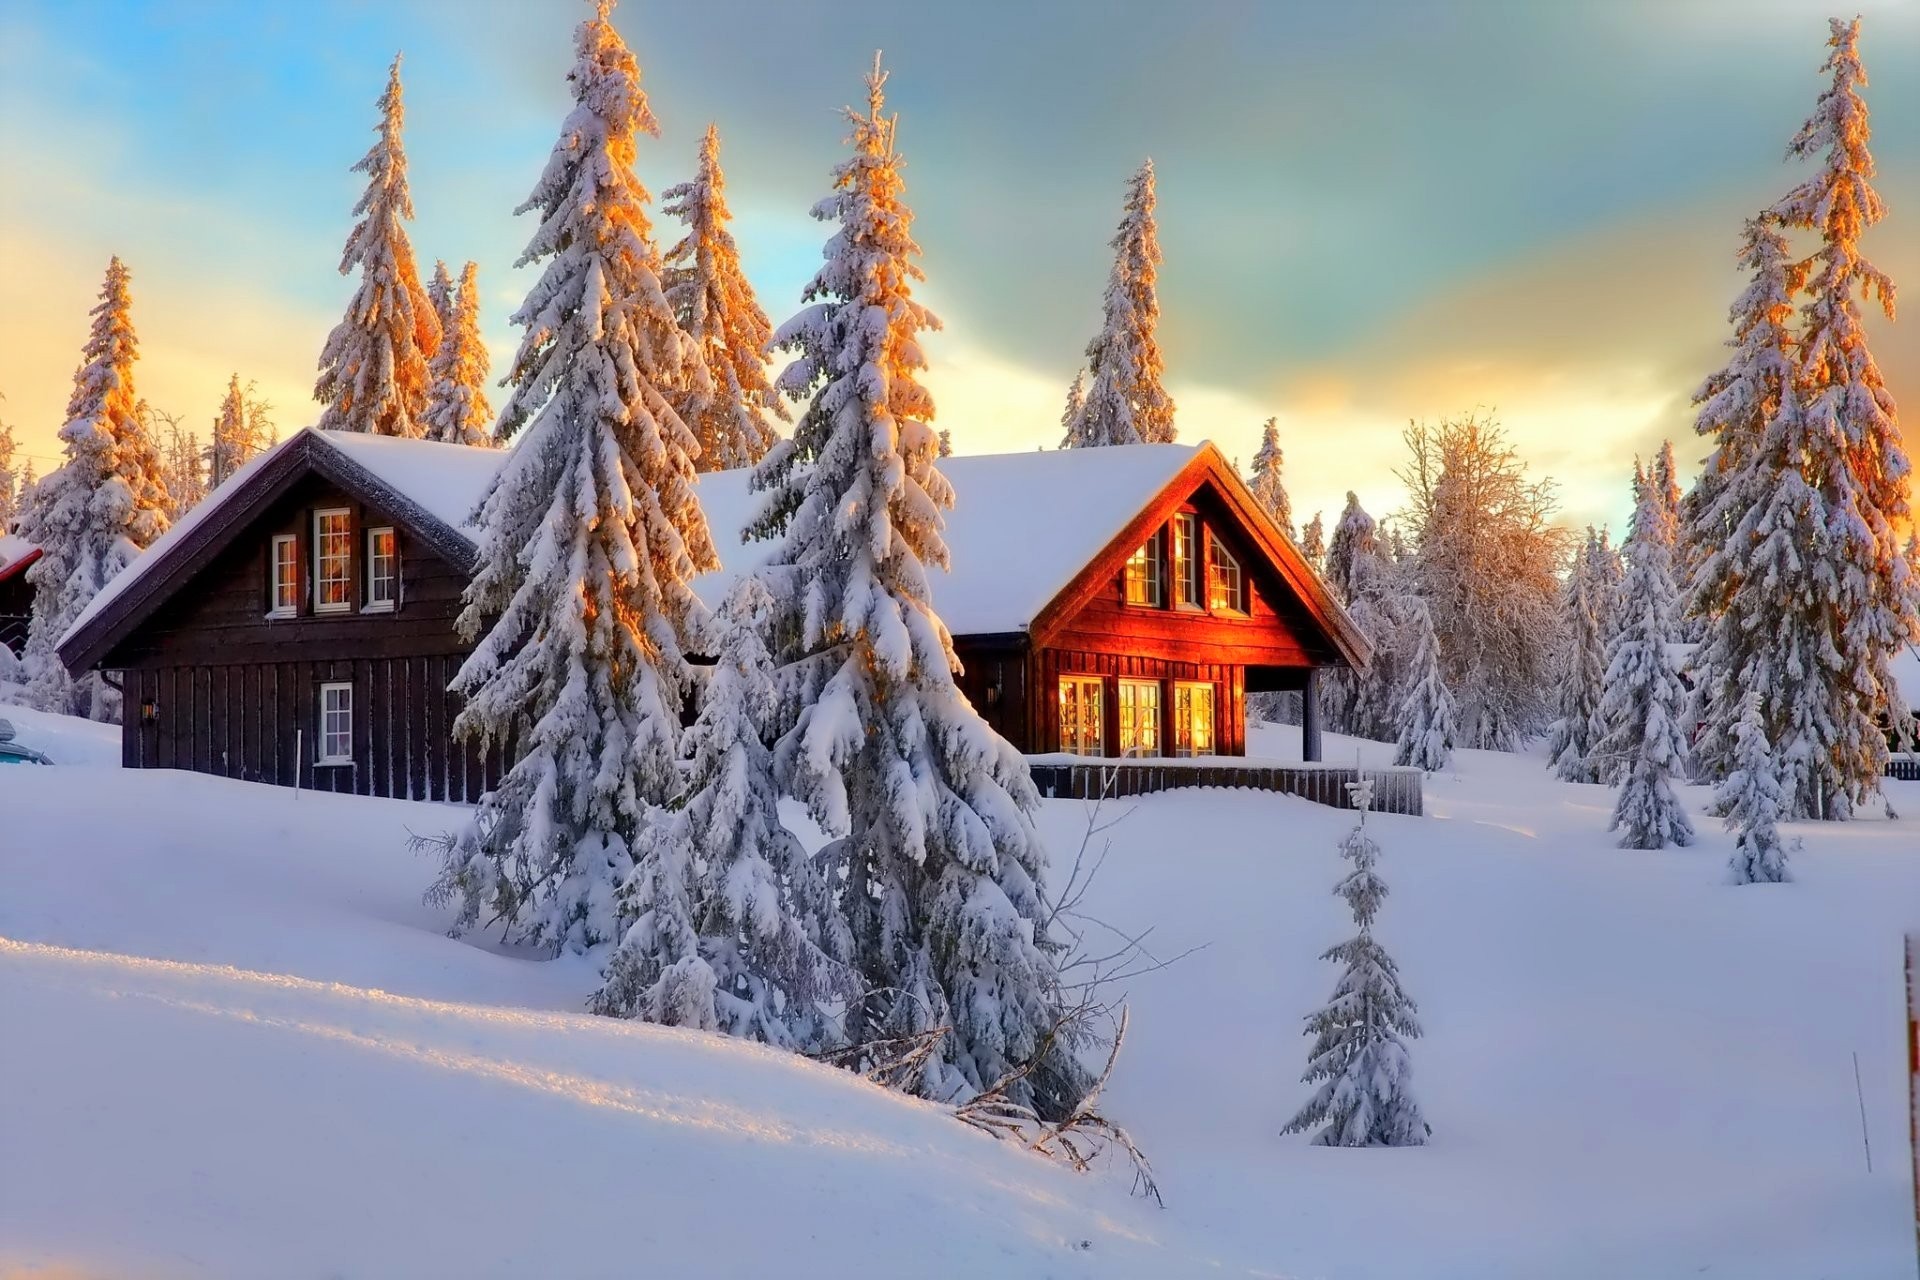 Скачать обои бесплатно Зима, Снег, Лес, Дерево, Дом, Домик, Фотографии картинка на рабочий стол ПК